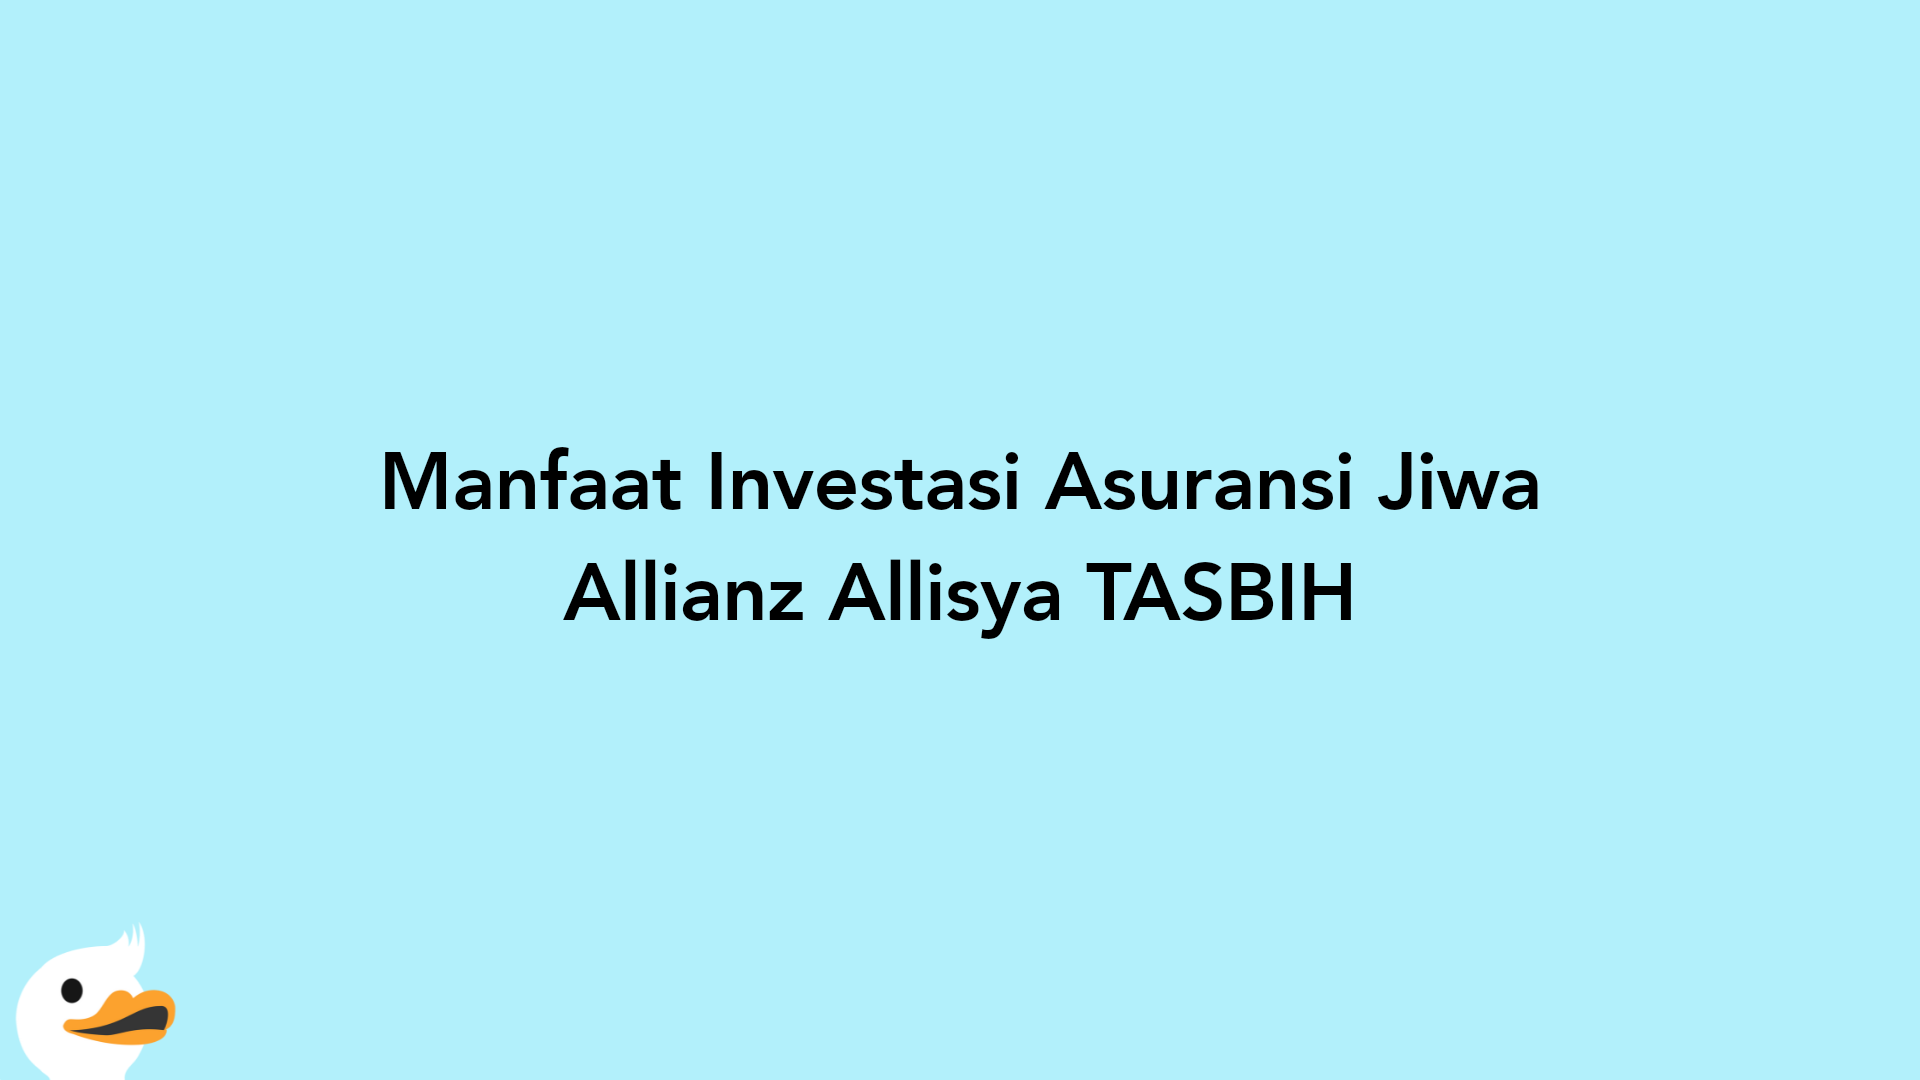 Manfaat Investasi Asuransi Jiwa Allianz Allisya TASBIH